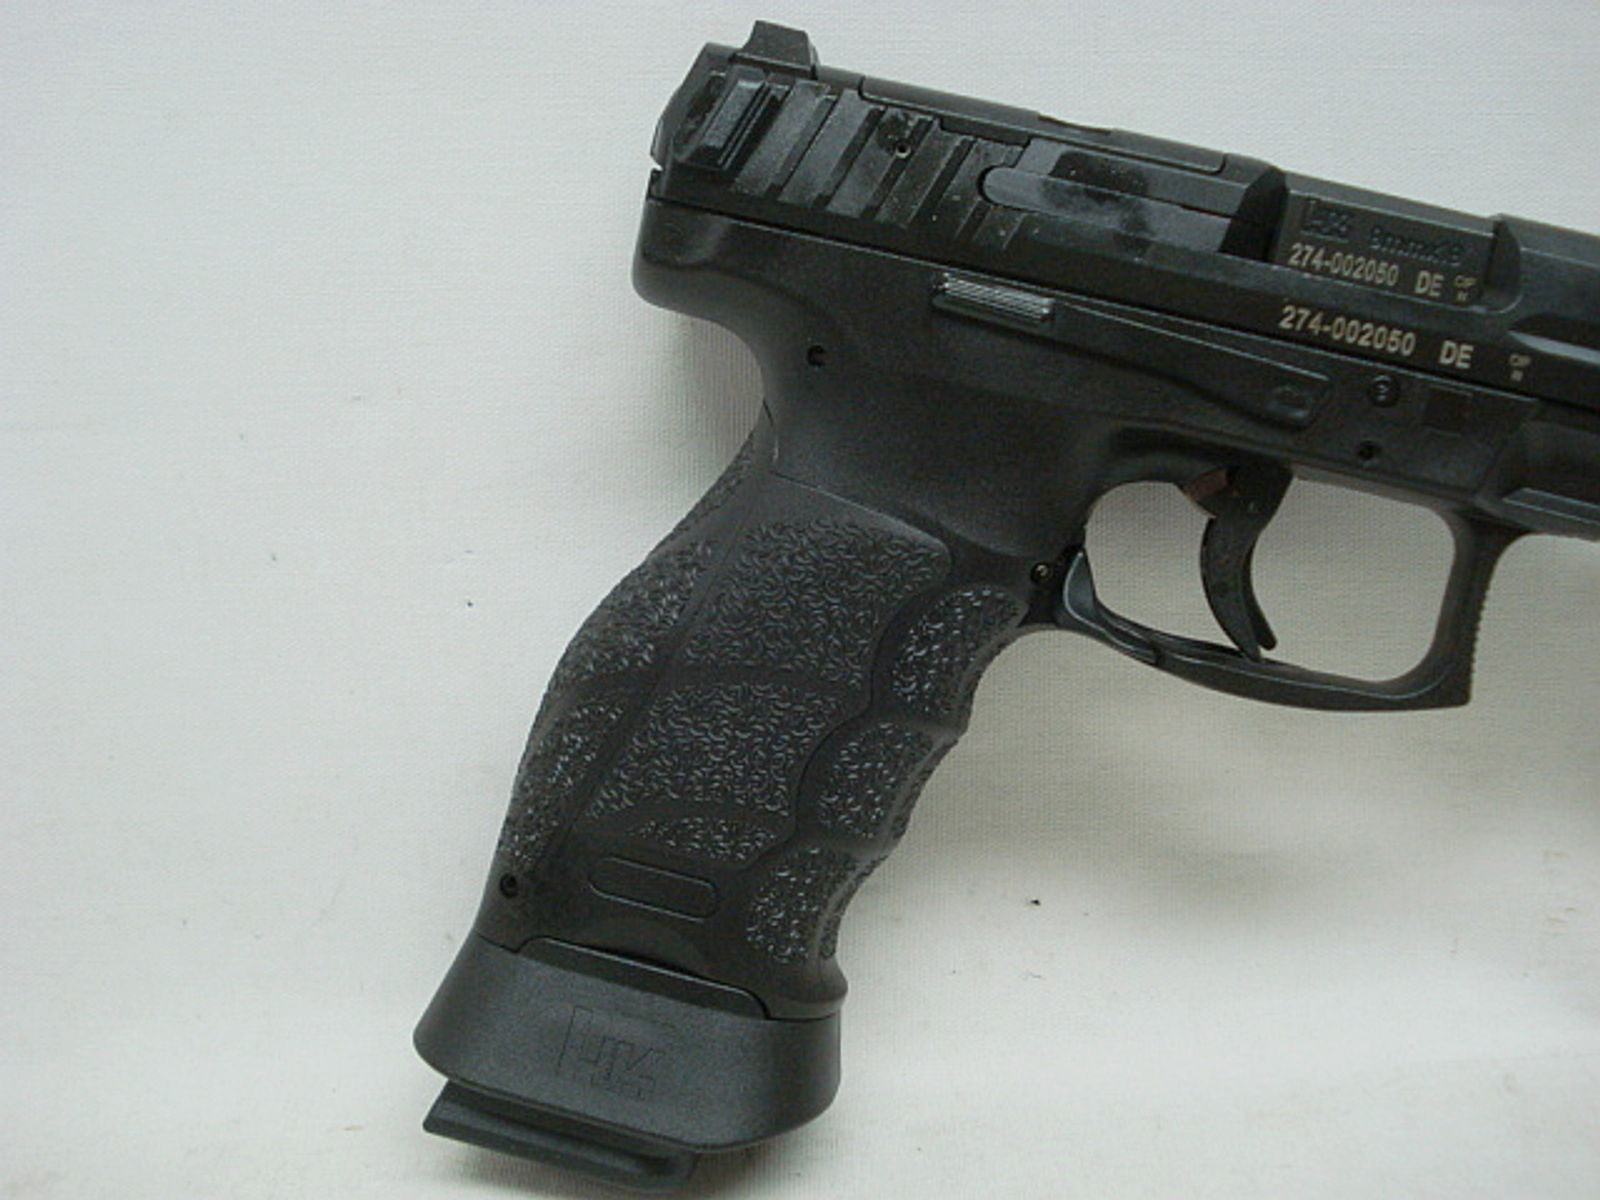 SFP9-OR Match - Kal.9 mm Luger, schwarz